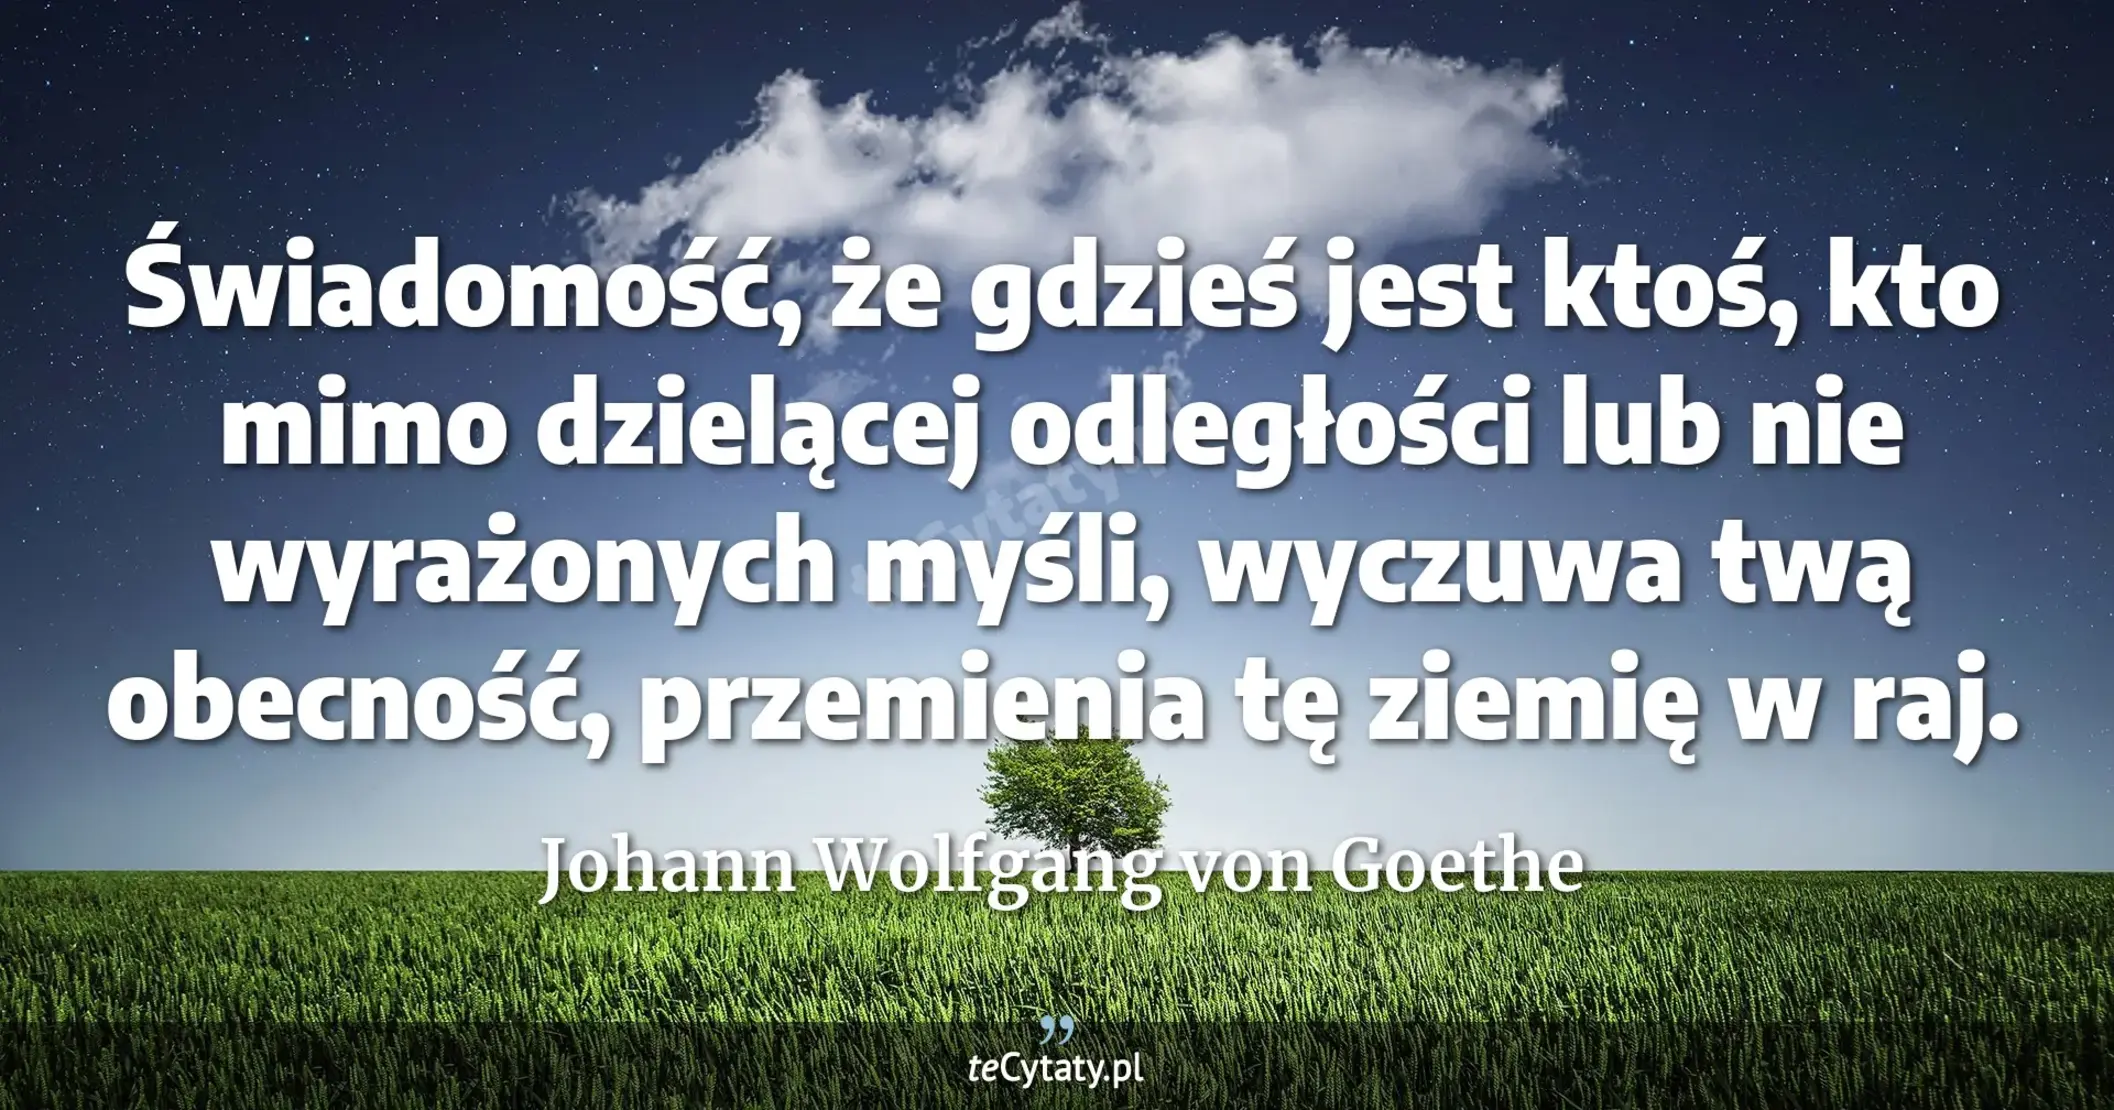 Świadomość, że gdzieś jest ktoś, kto mimo dzielącej odległości lub nie wyrażonych myśli, wyczuwa twą obecność, przemienia tę ziemię w raj. - Johann Wolfgang von Goethe